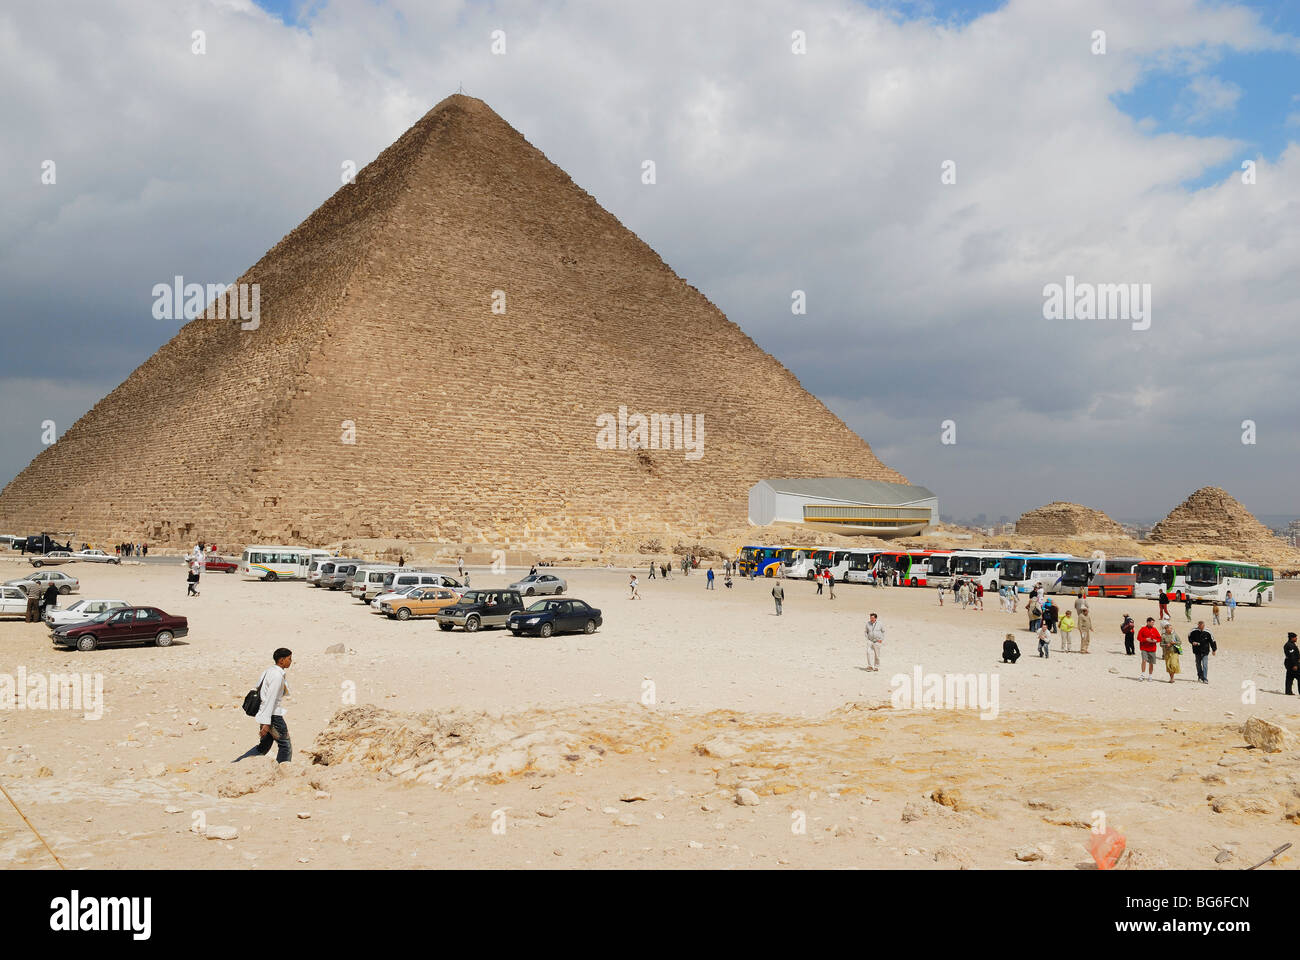 La grande pyramide de Gizeh a également appelé la pyramide de Chéops et la pyramide de Khéops, en Egypte Banque D'Images